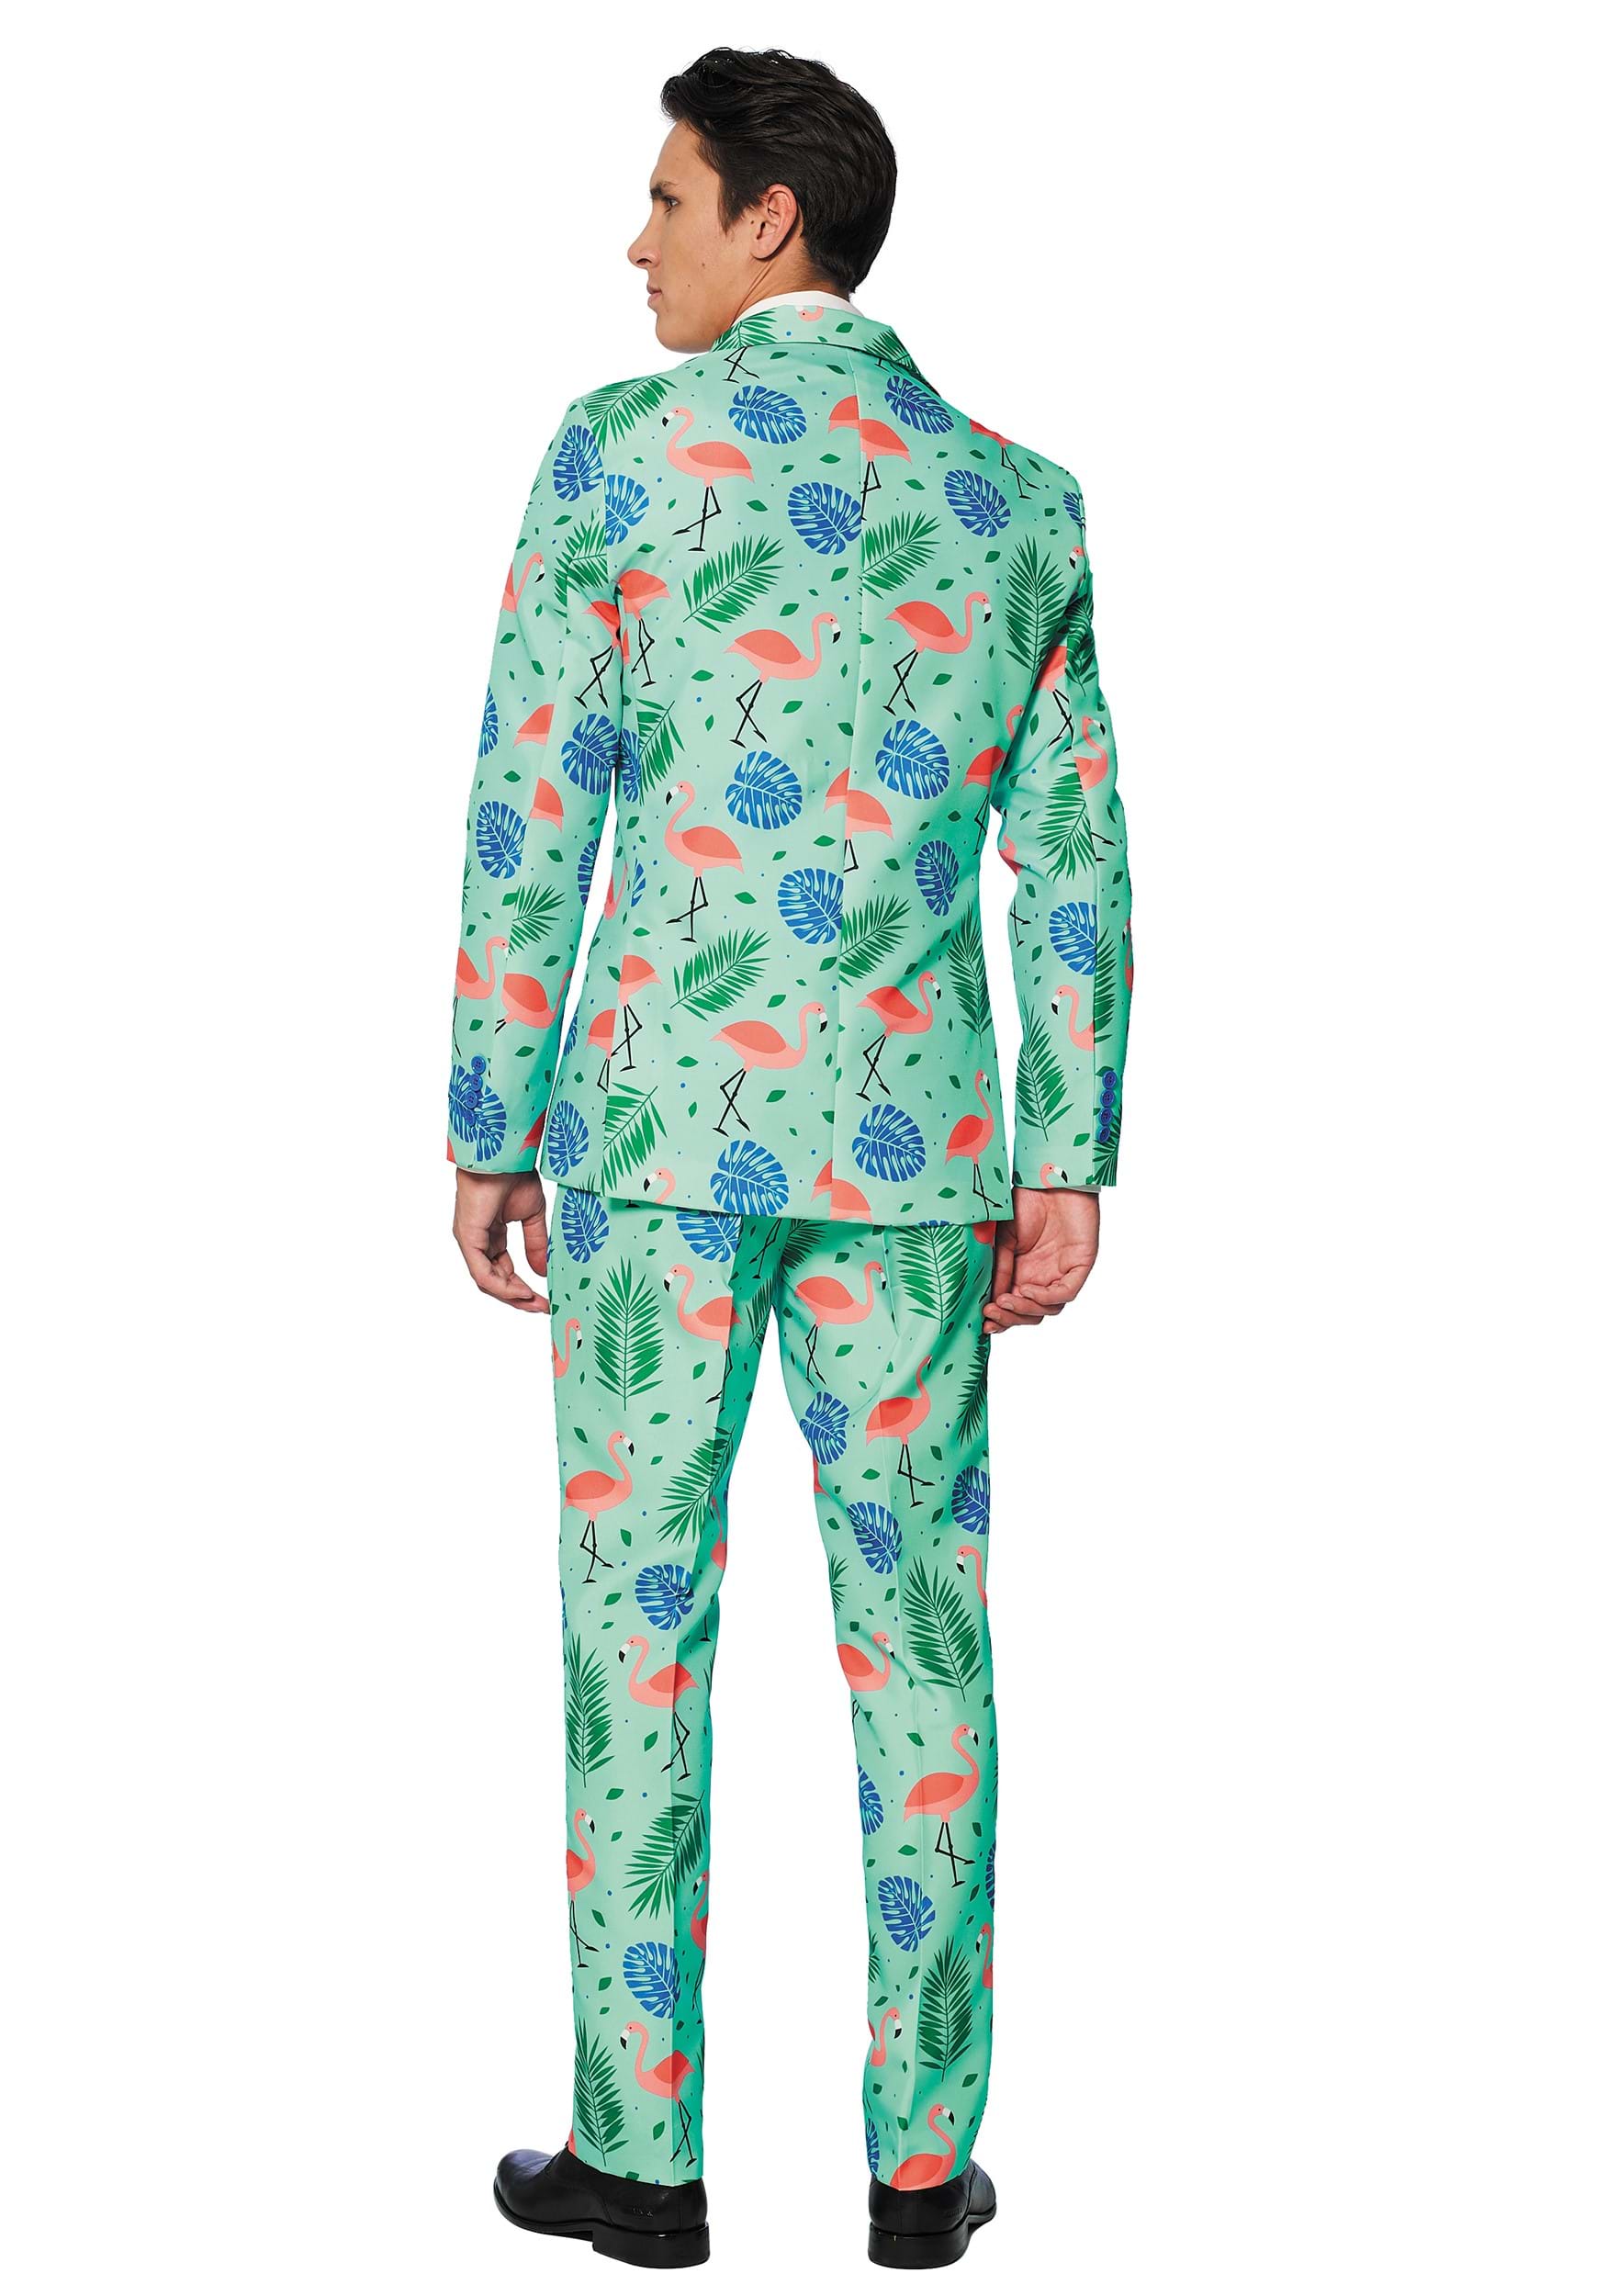 Men's Suitmeister Tropical Suit Fancy Dress Costume